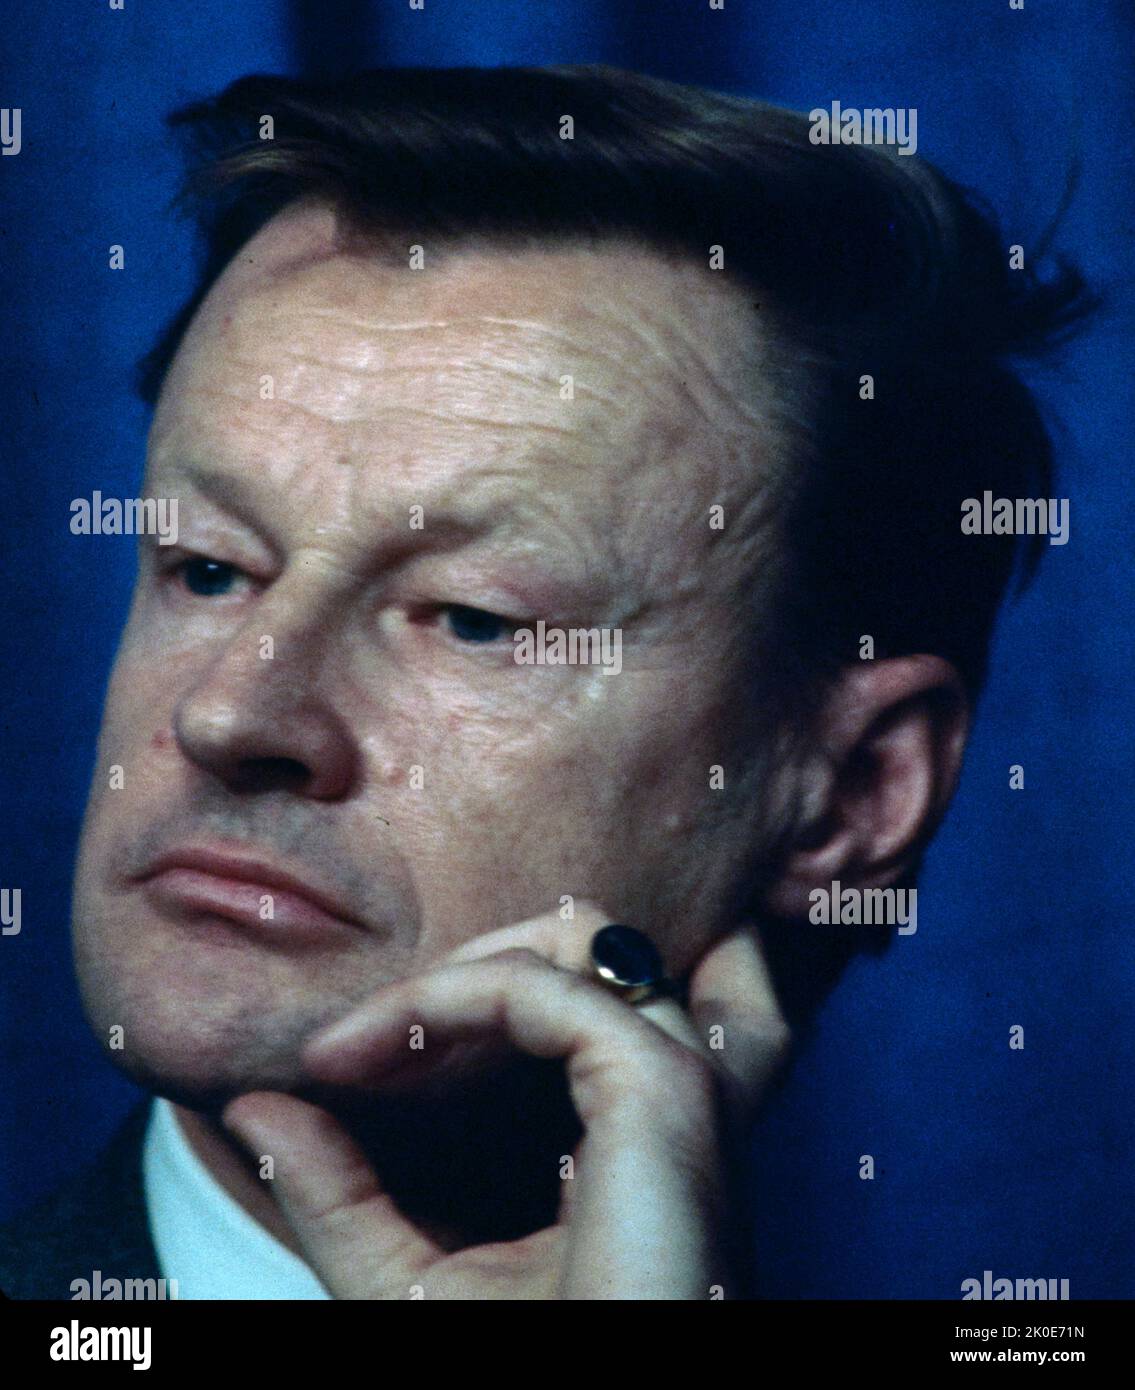 Zbigniew Kazimierz Brzezinski (1928 - 2017) Diplomático y politólogo estadounidense. Sirvió como consejero del presidente Lyndon B. Johnson de 1966 a 1968 y fue asesor de seguridad nacional del presidente Jimmy Carter de 1977 a 1981. Foto de stock